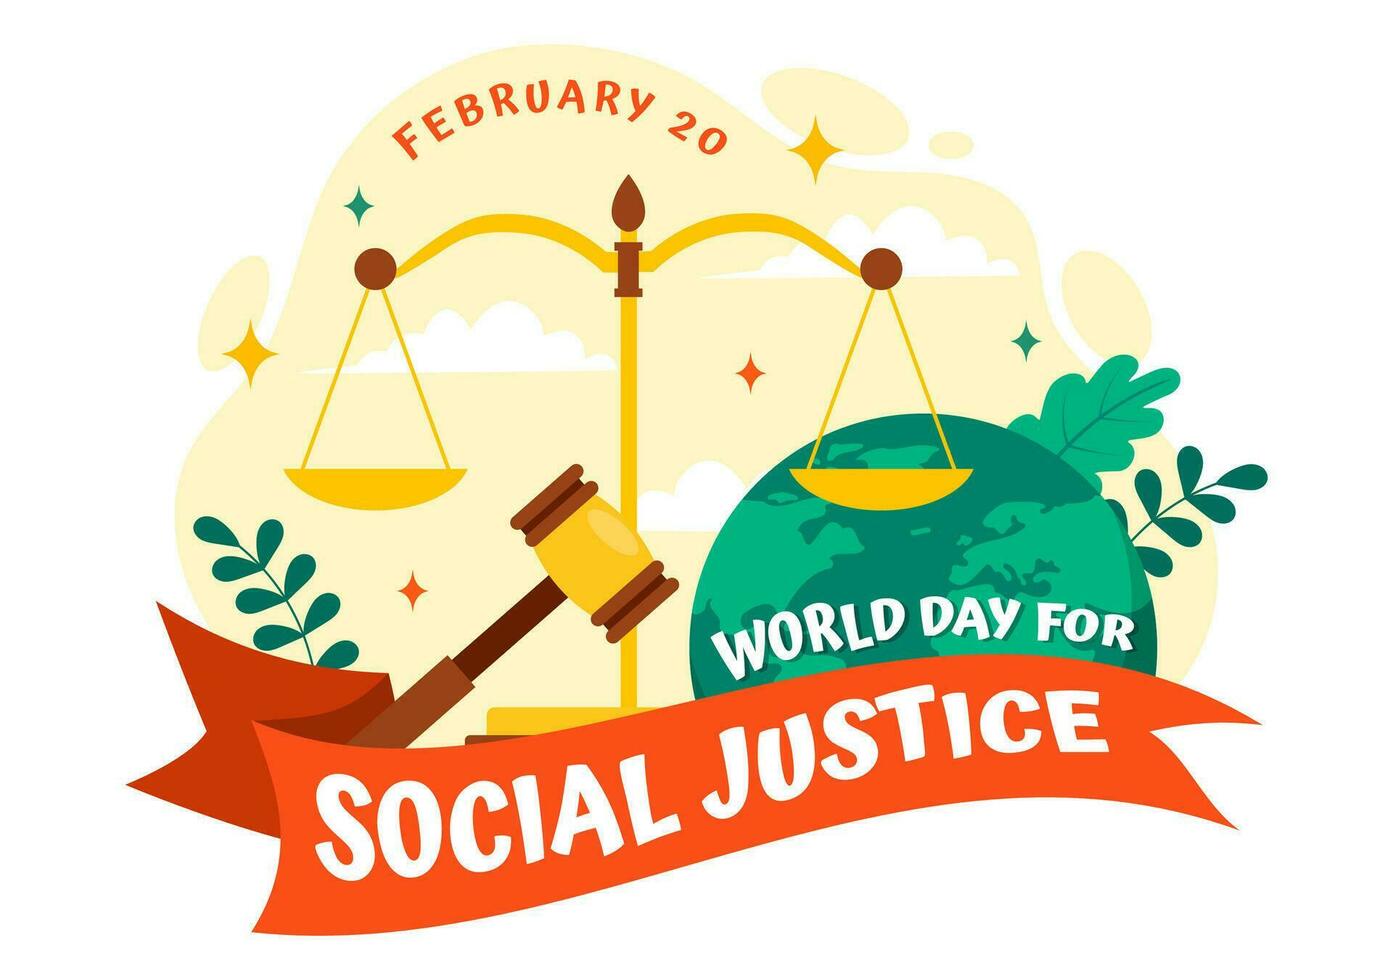 wereld dag van sociaal gerechtigheid vector illustratie Aan februari 20 met balans of hamer voor een alleen maar verhouding en onrecht bescherming in achtergrond